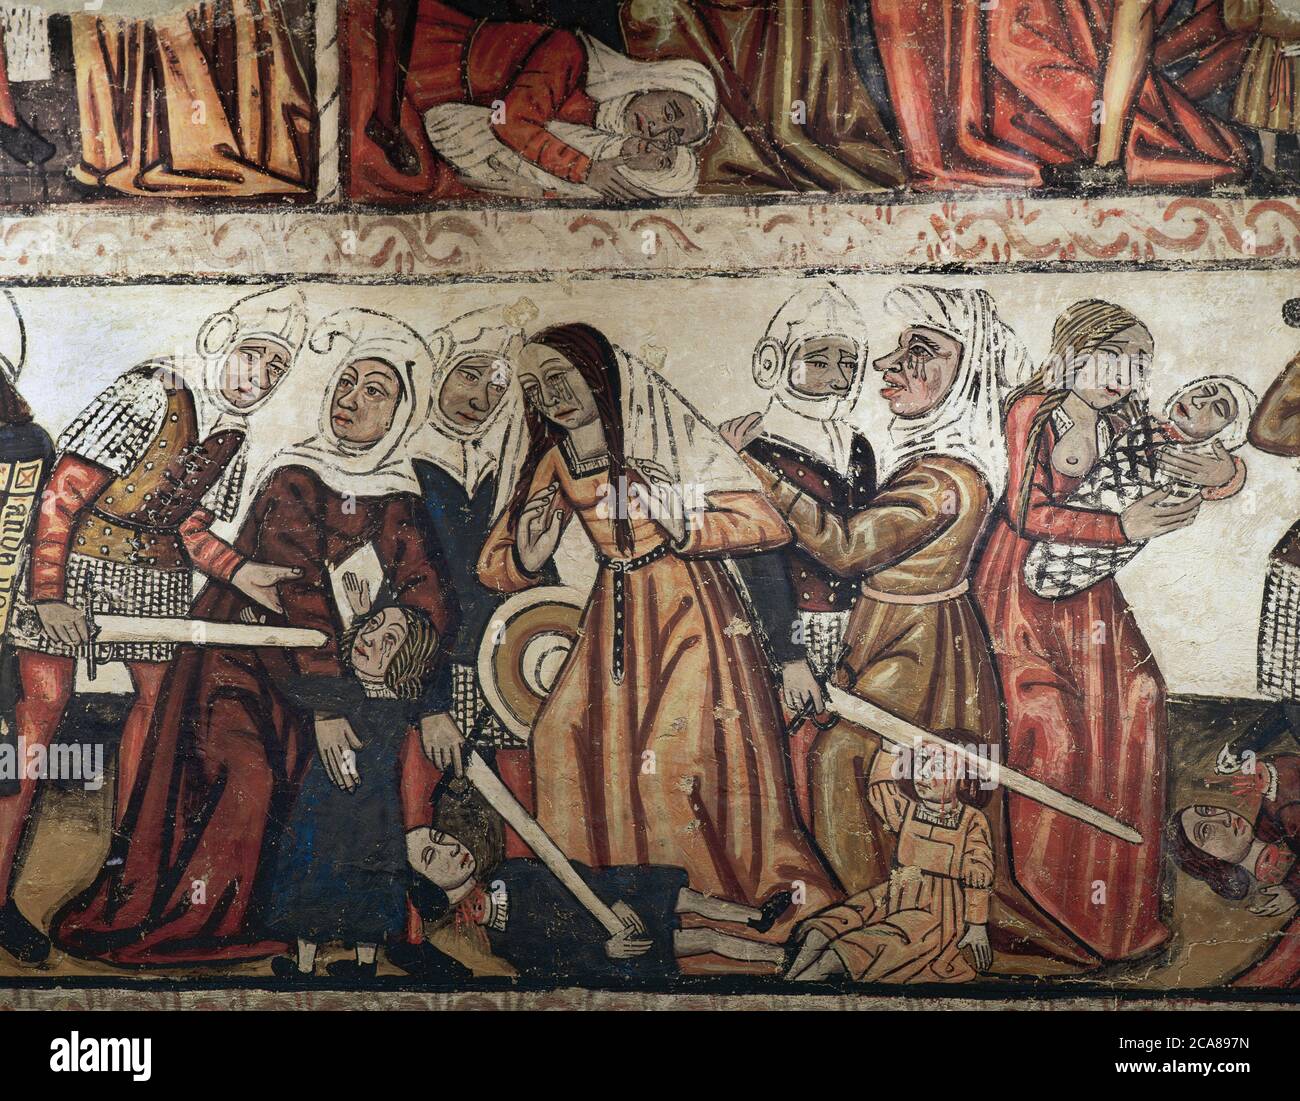 Masacre de los inocentes. Pinturas murales de la nave central, siglo 14. Detalle. Catedral de Mondoñedo. Provincia de Lugo, Galicia, España. Foto de stock